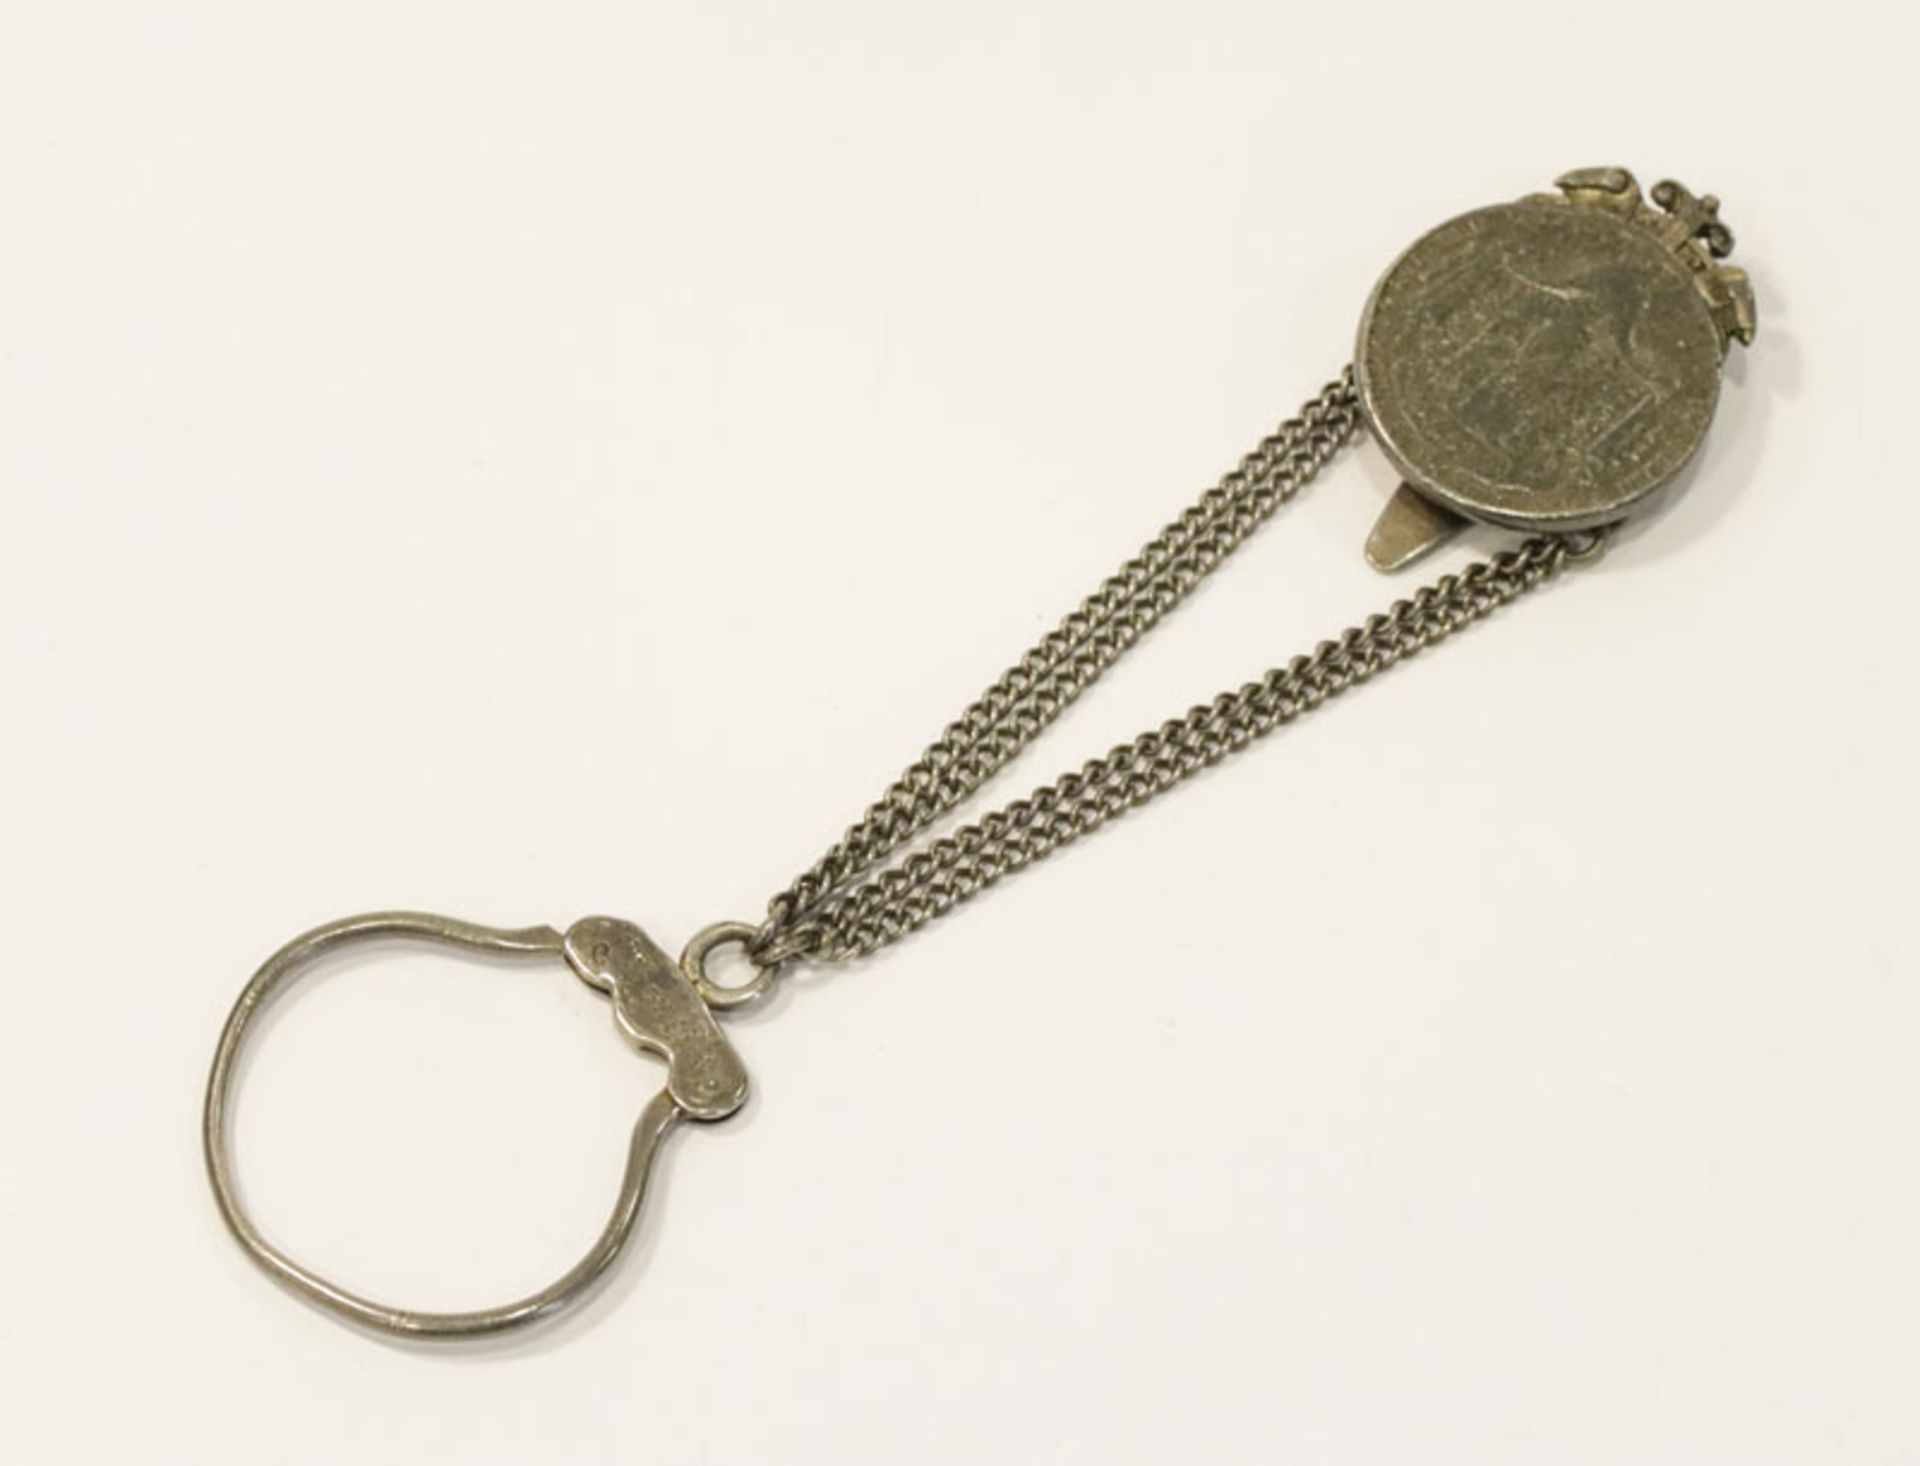 Trachten-Rockstecker mit Schlüsselring, L 20 cm, 77 gr., Tragespuren